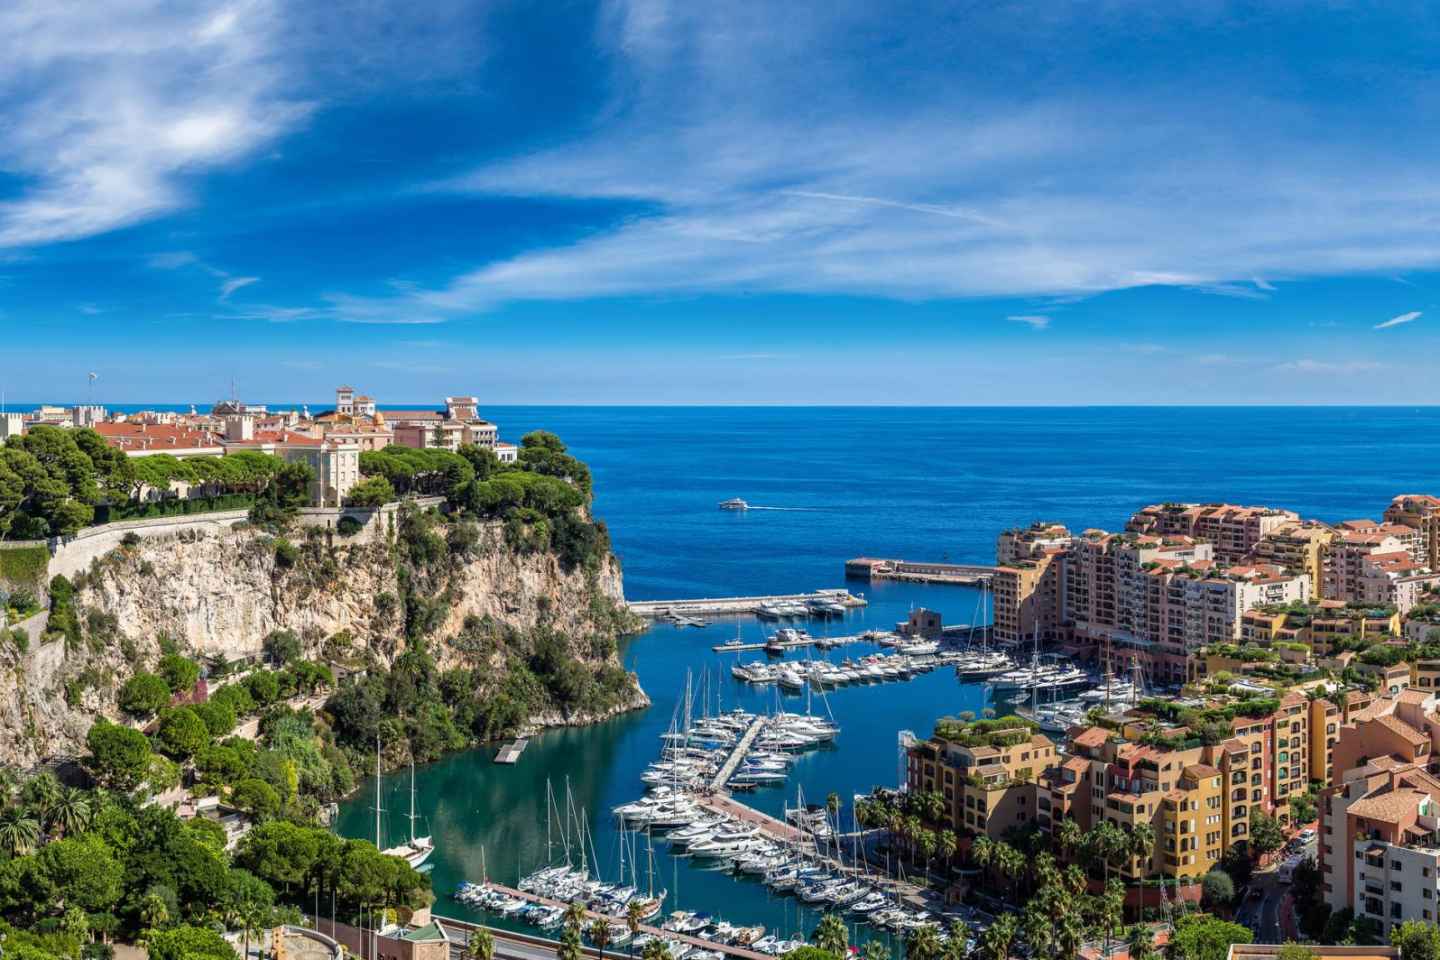 Ganztages Monaco, Monte-Carlo und Eze-Tour von Cannes